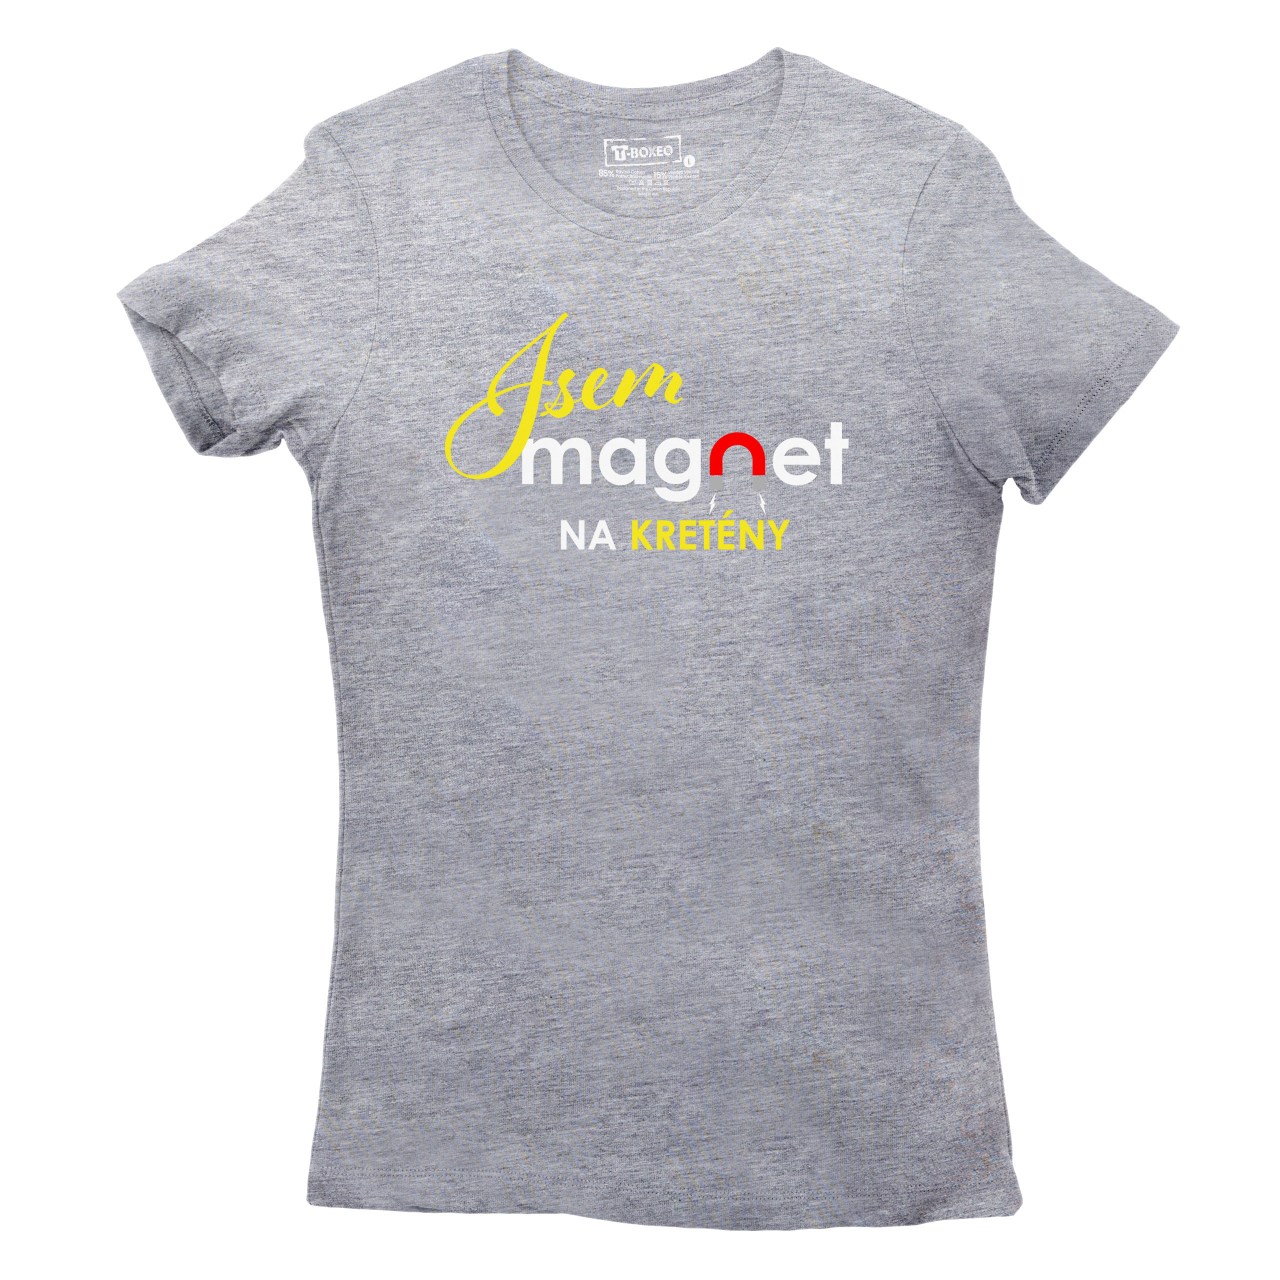 Dámské tričko s potiskem “Jsem magnet na kretény”